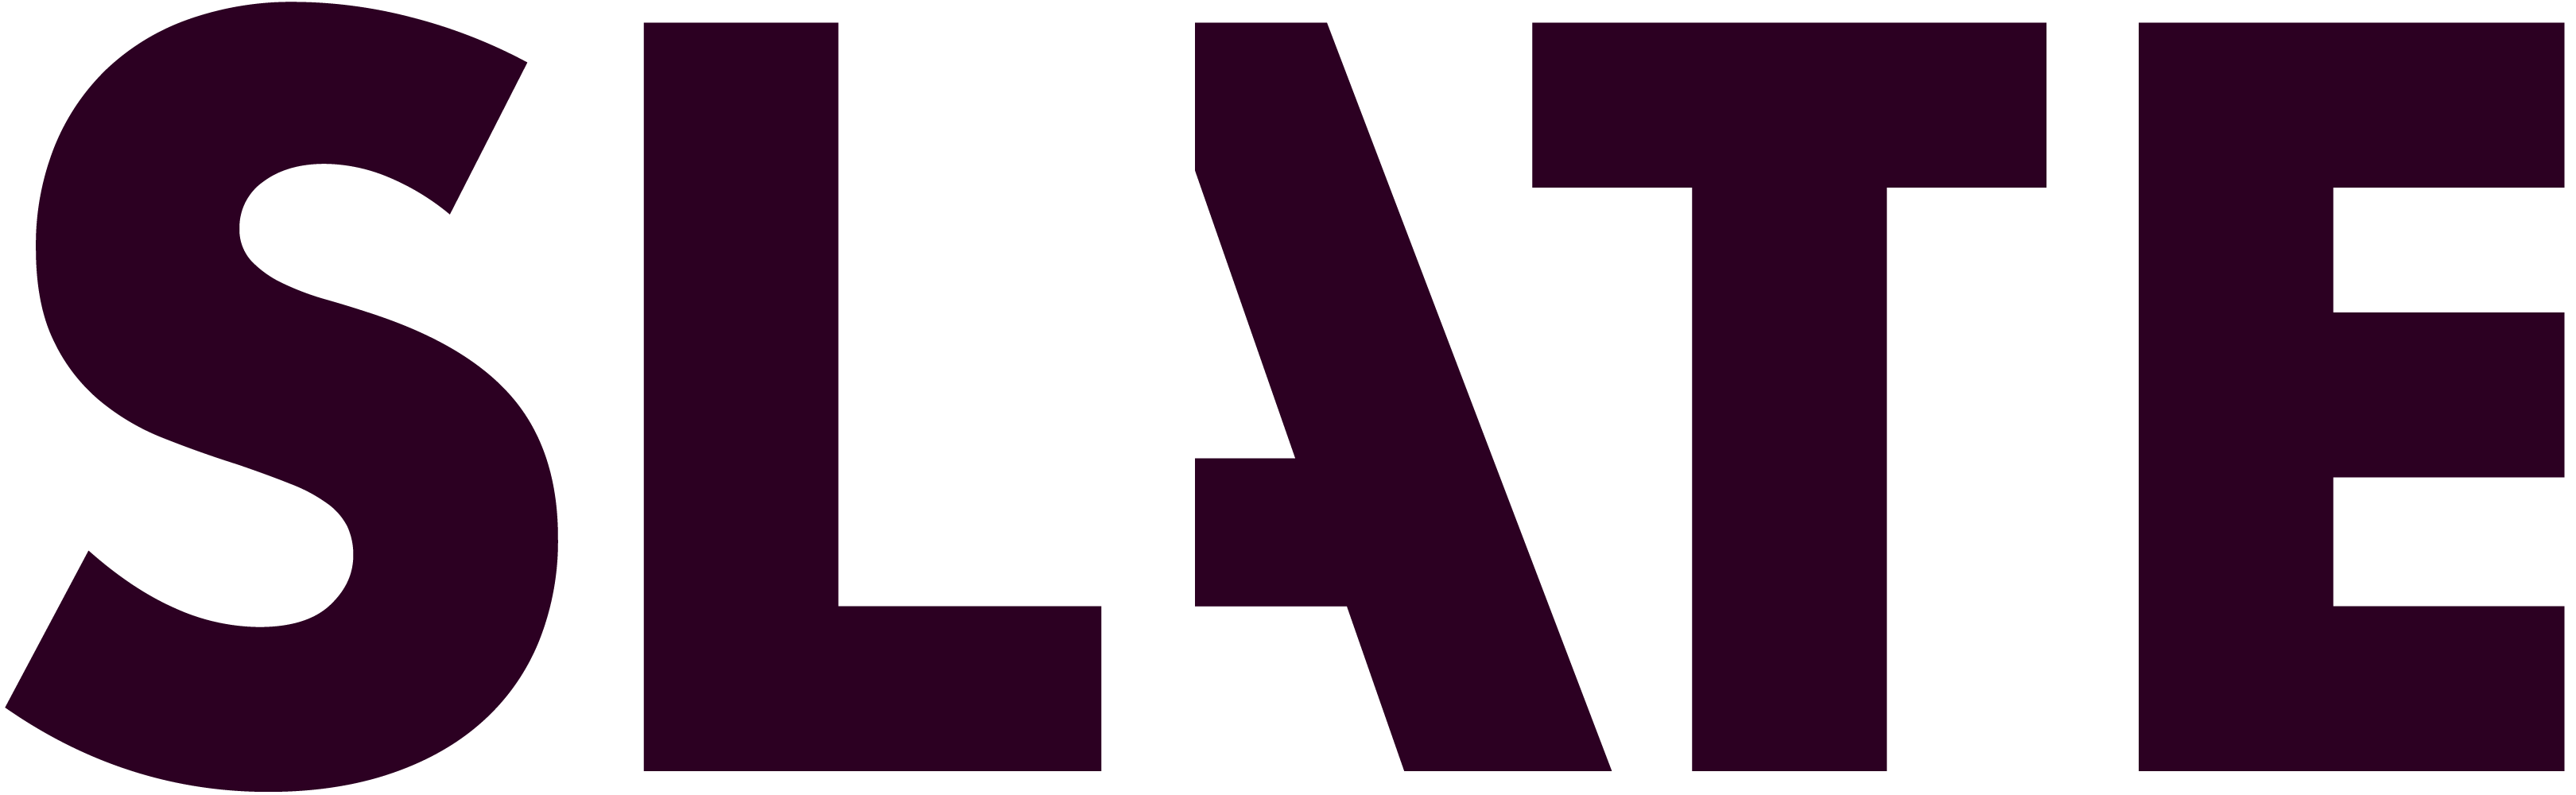 official Logo for Slate online magazine